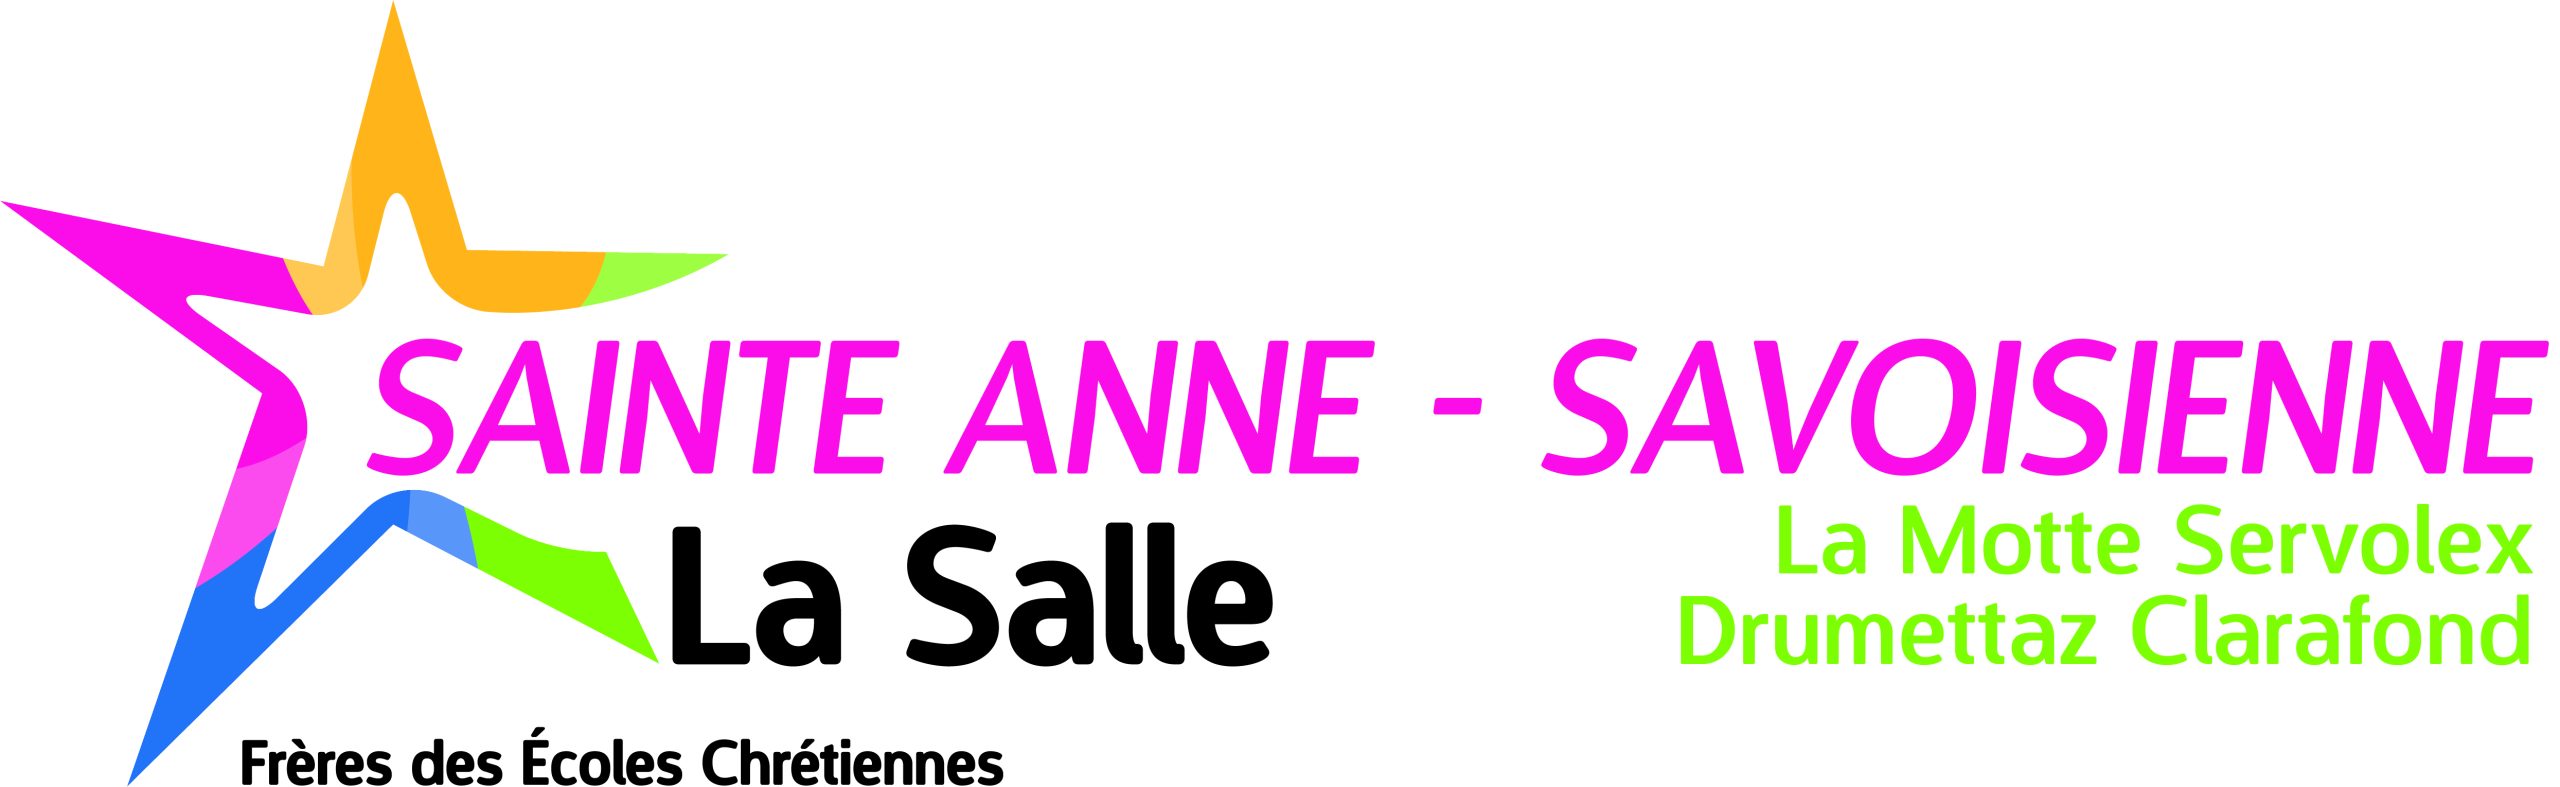 sainteanne-logo